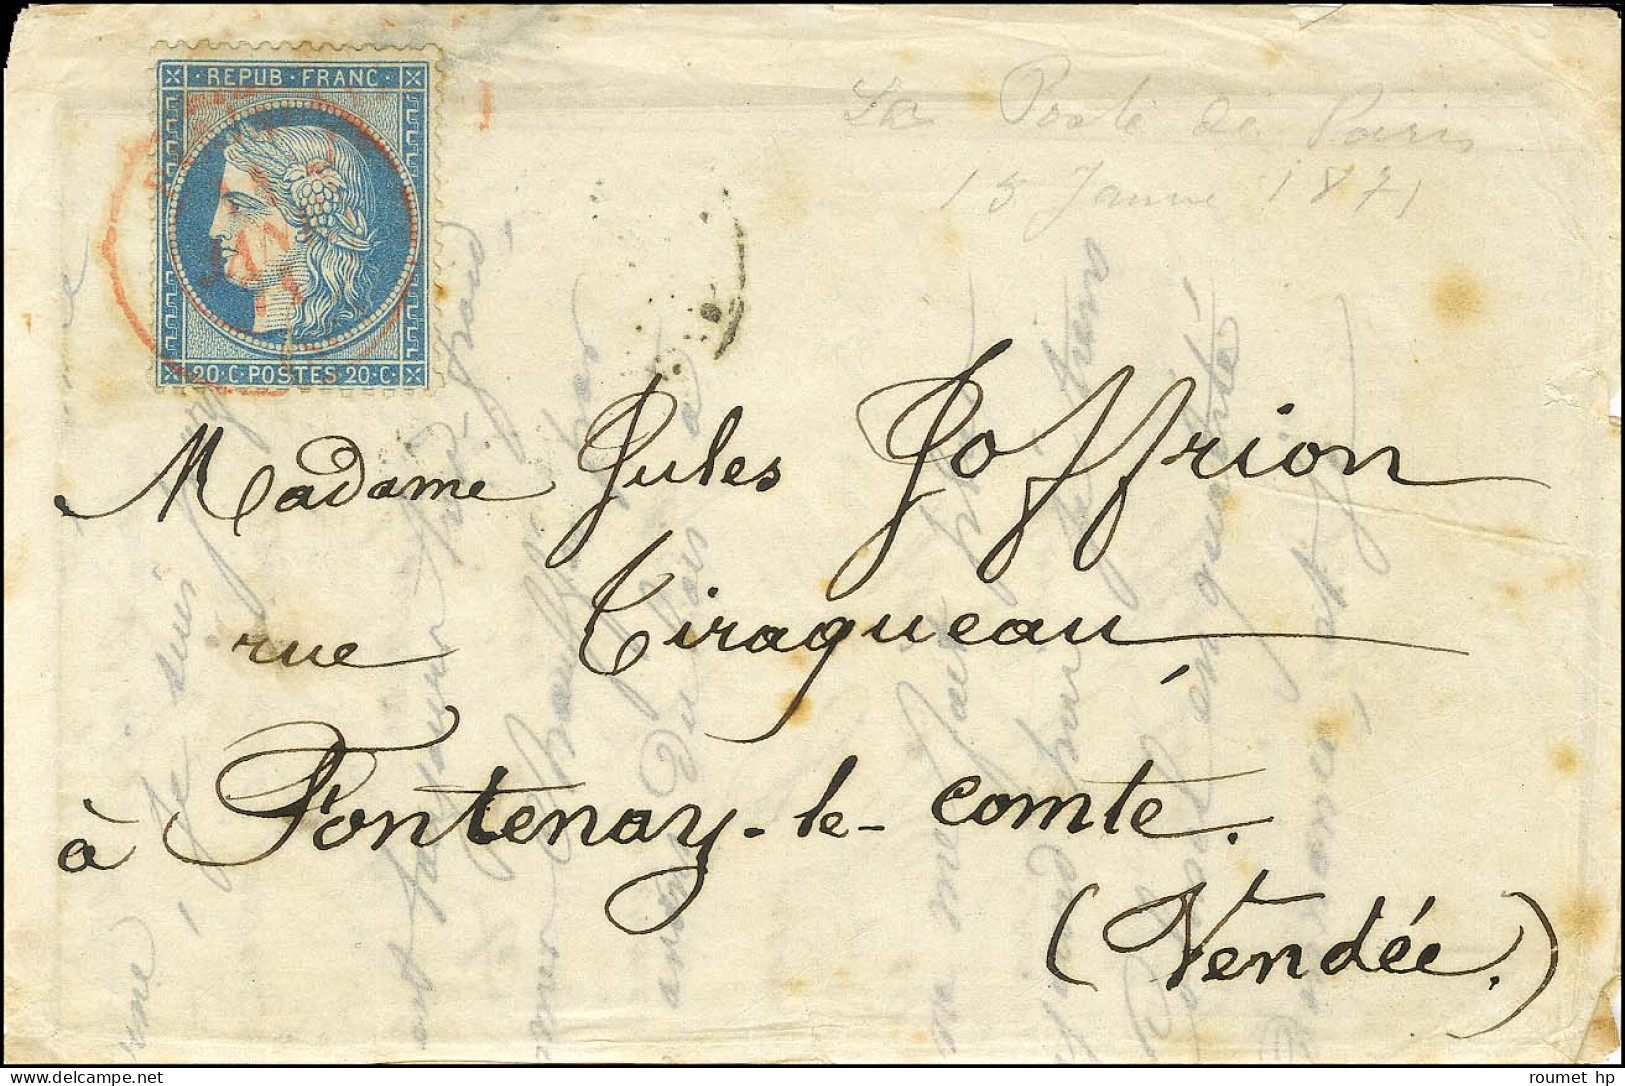 Càd Rouge PARIS (SC) 11 JANV. 71 / N° 37 (leg Def) Sur Lettre Pour Fontenay Le Comte. Au Verso, Càd LILLE A PARIS 15 JAN - War 1870